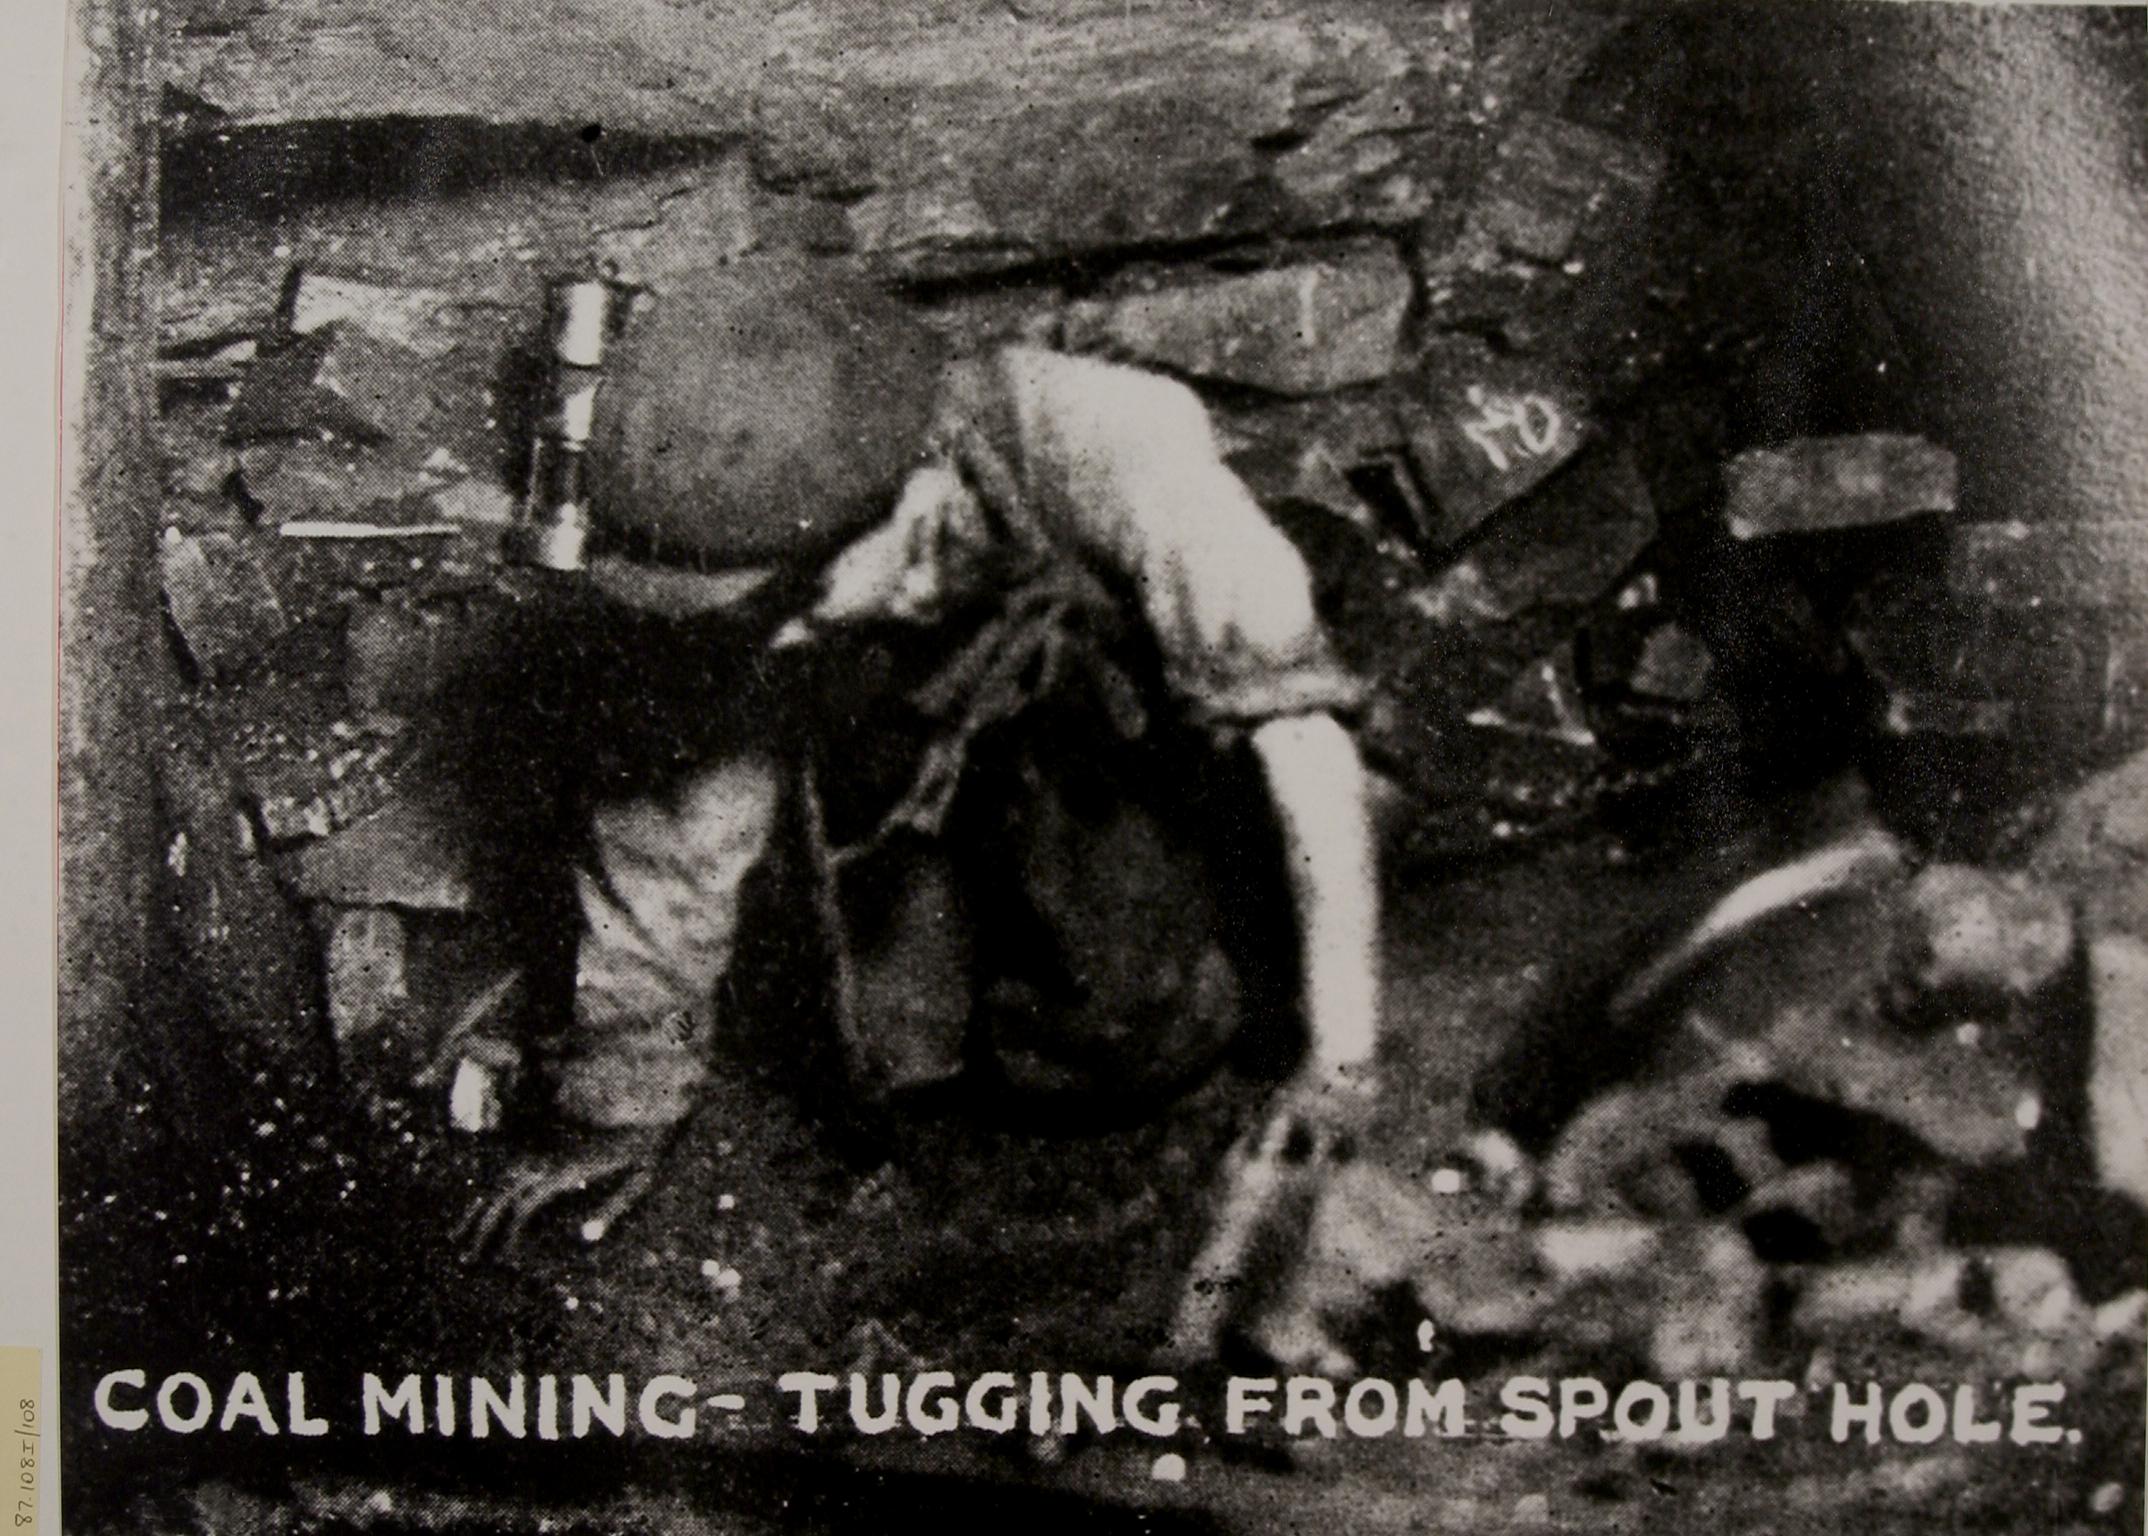 Miner underground, photograph